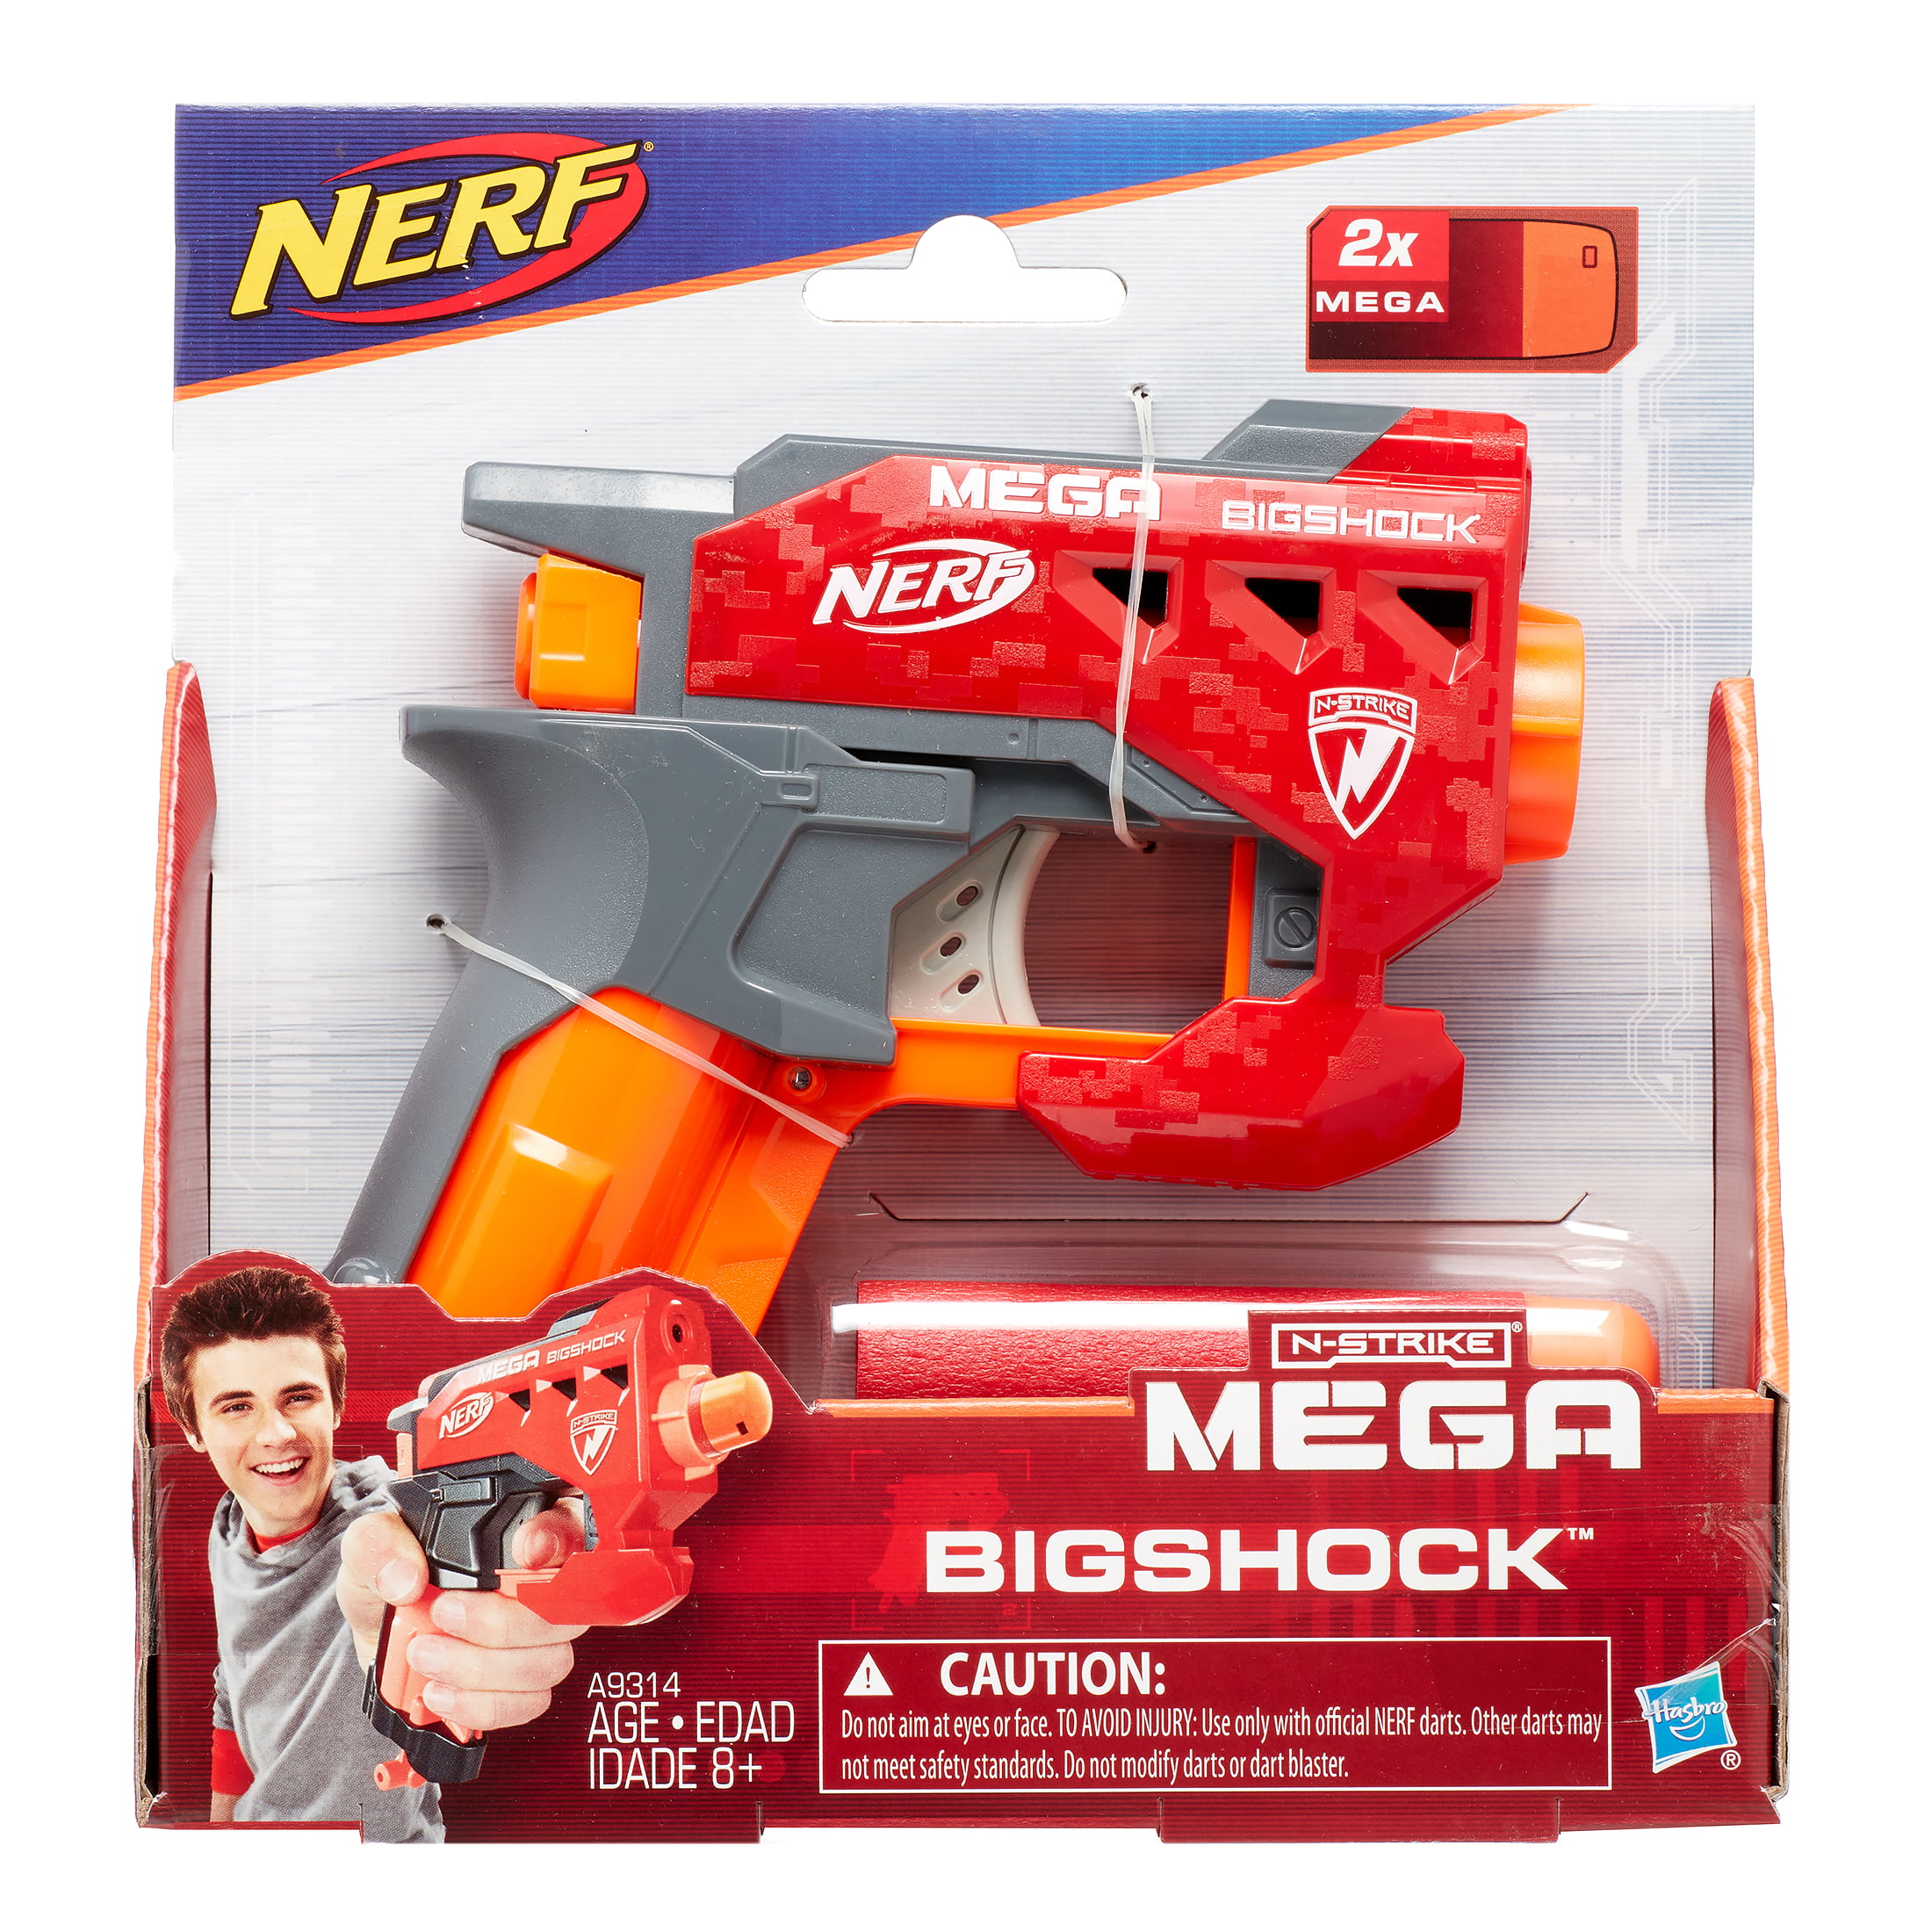 Nerf N-Strike Mega BigShock Blaster, Includes Official Nerf Mega Whistler Darts - Walmart.com